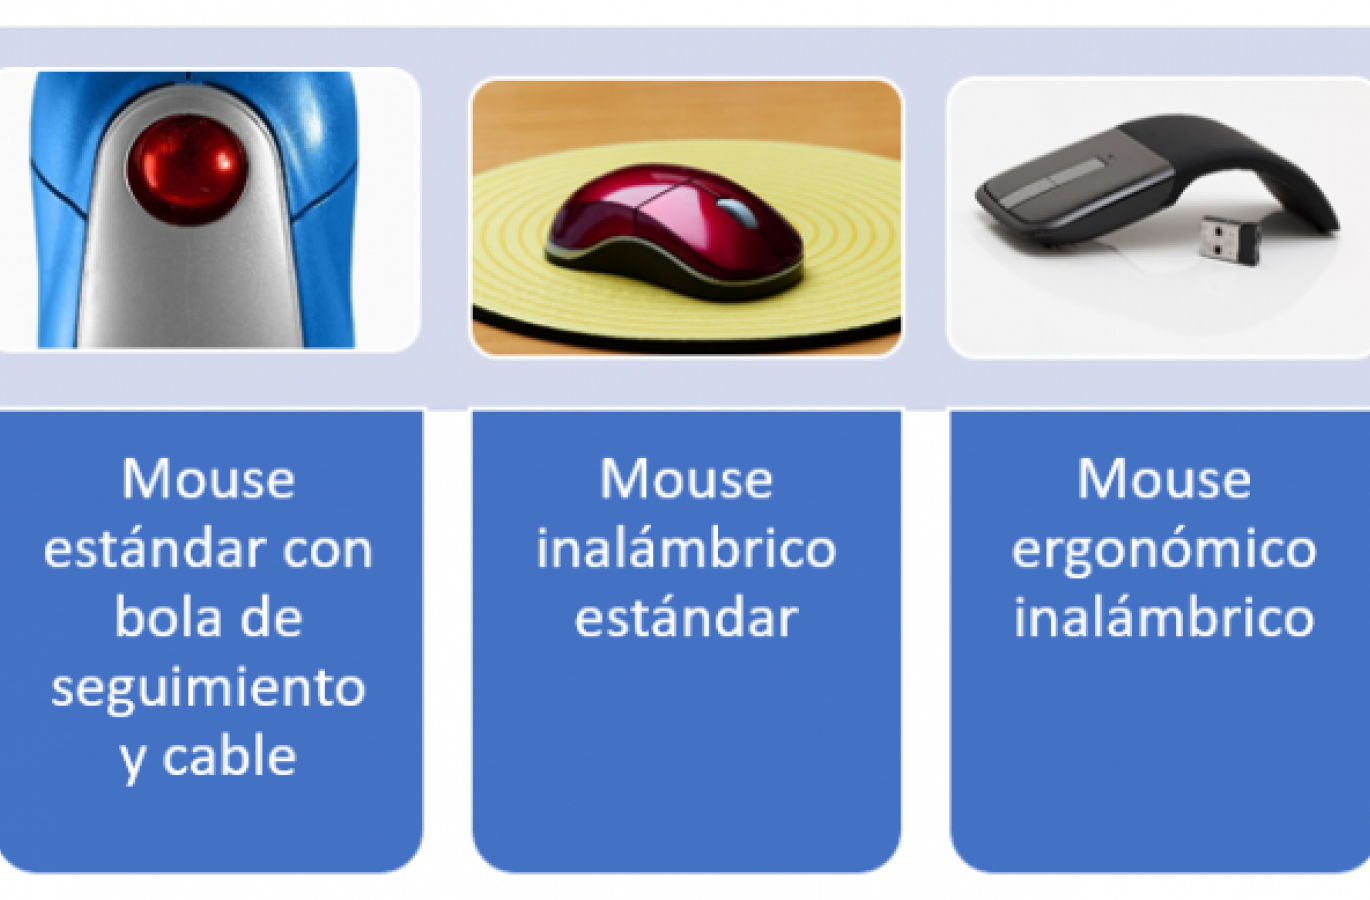 Tipos de mouse